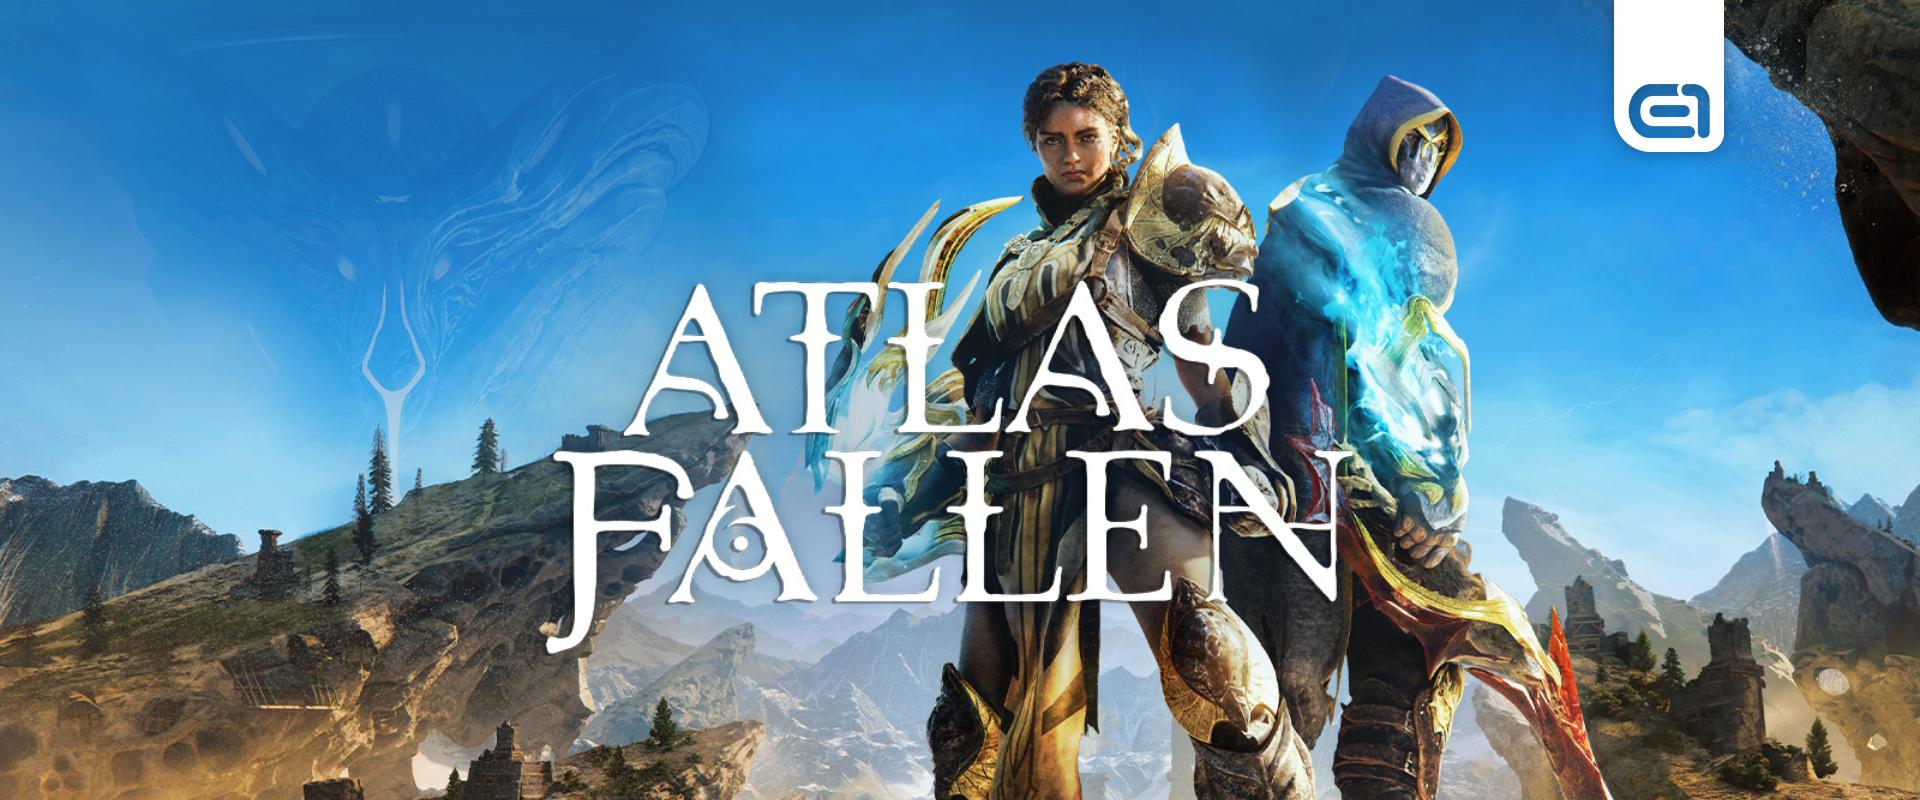 Atlas Fallen teszt: Nem egészen ezt ígérték az előzetesek